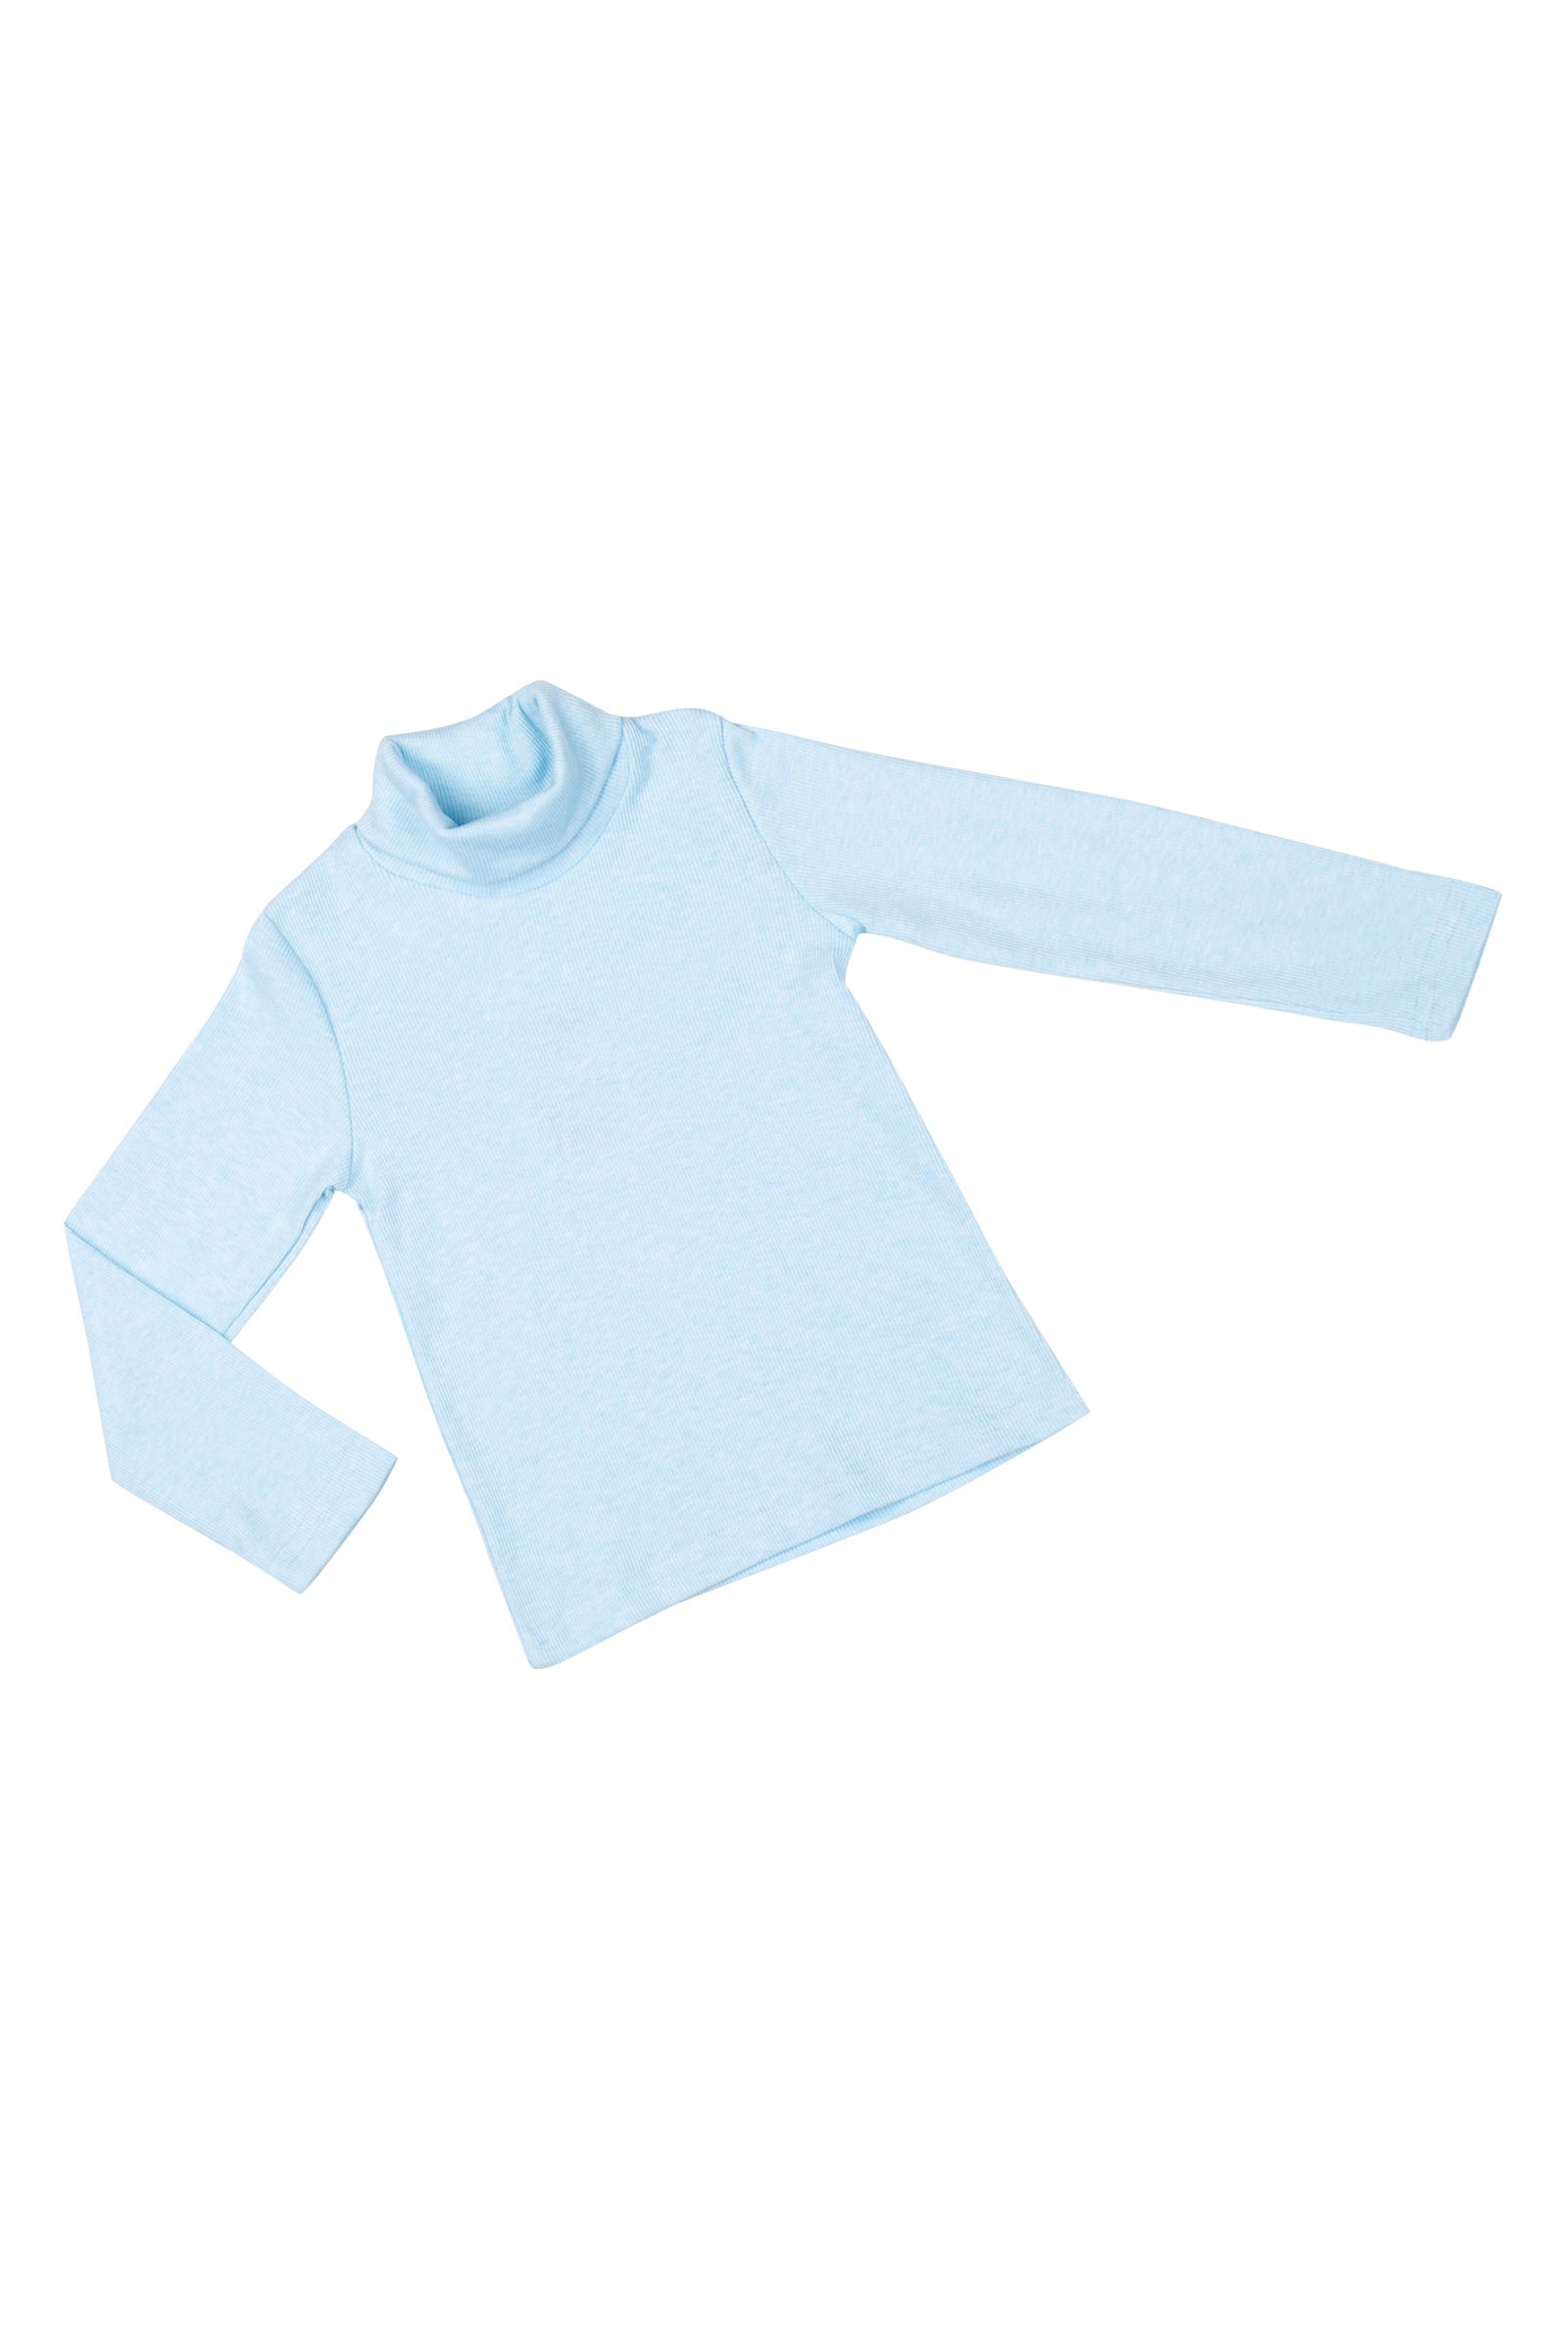 Джемпер-ДЖ12-3961 оптом от производителя детской одежды 'Алёна'